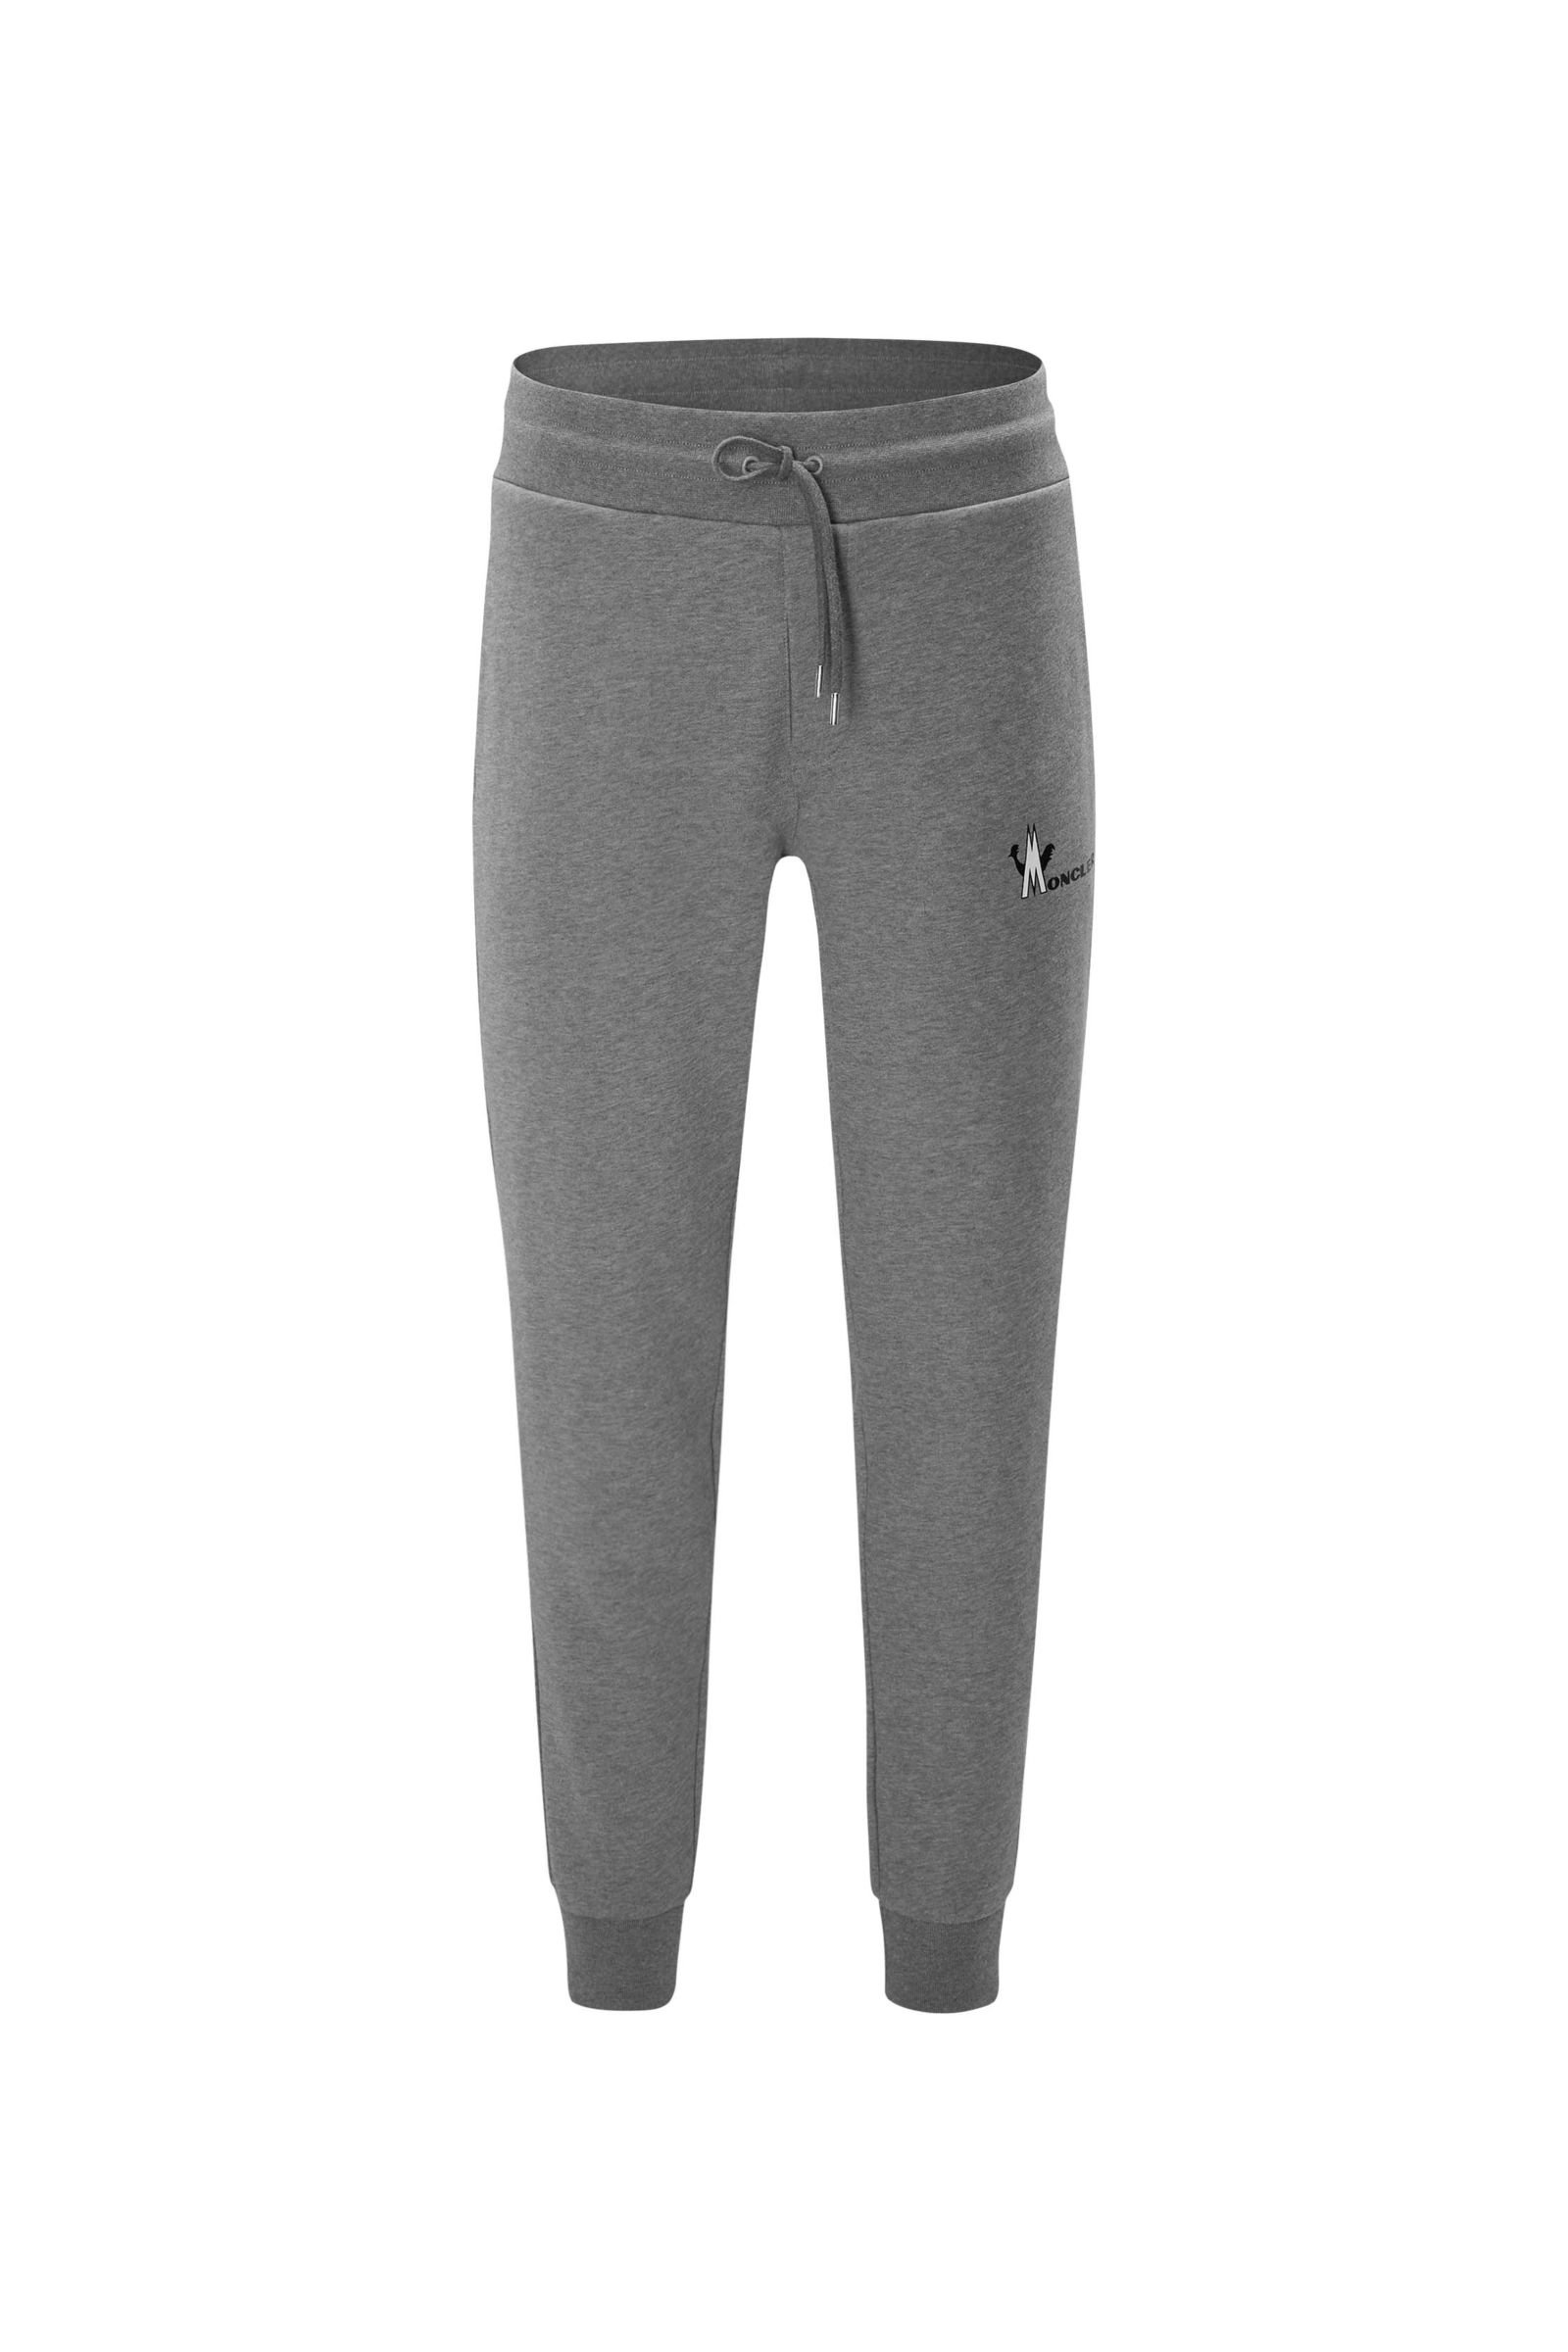 Sweat pants grey